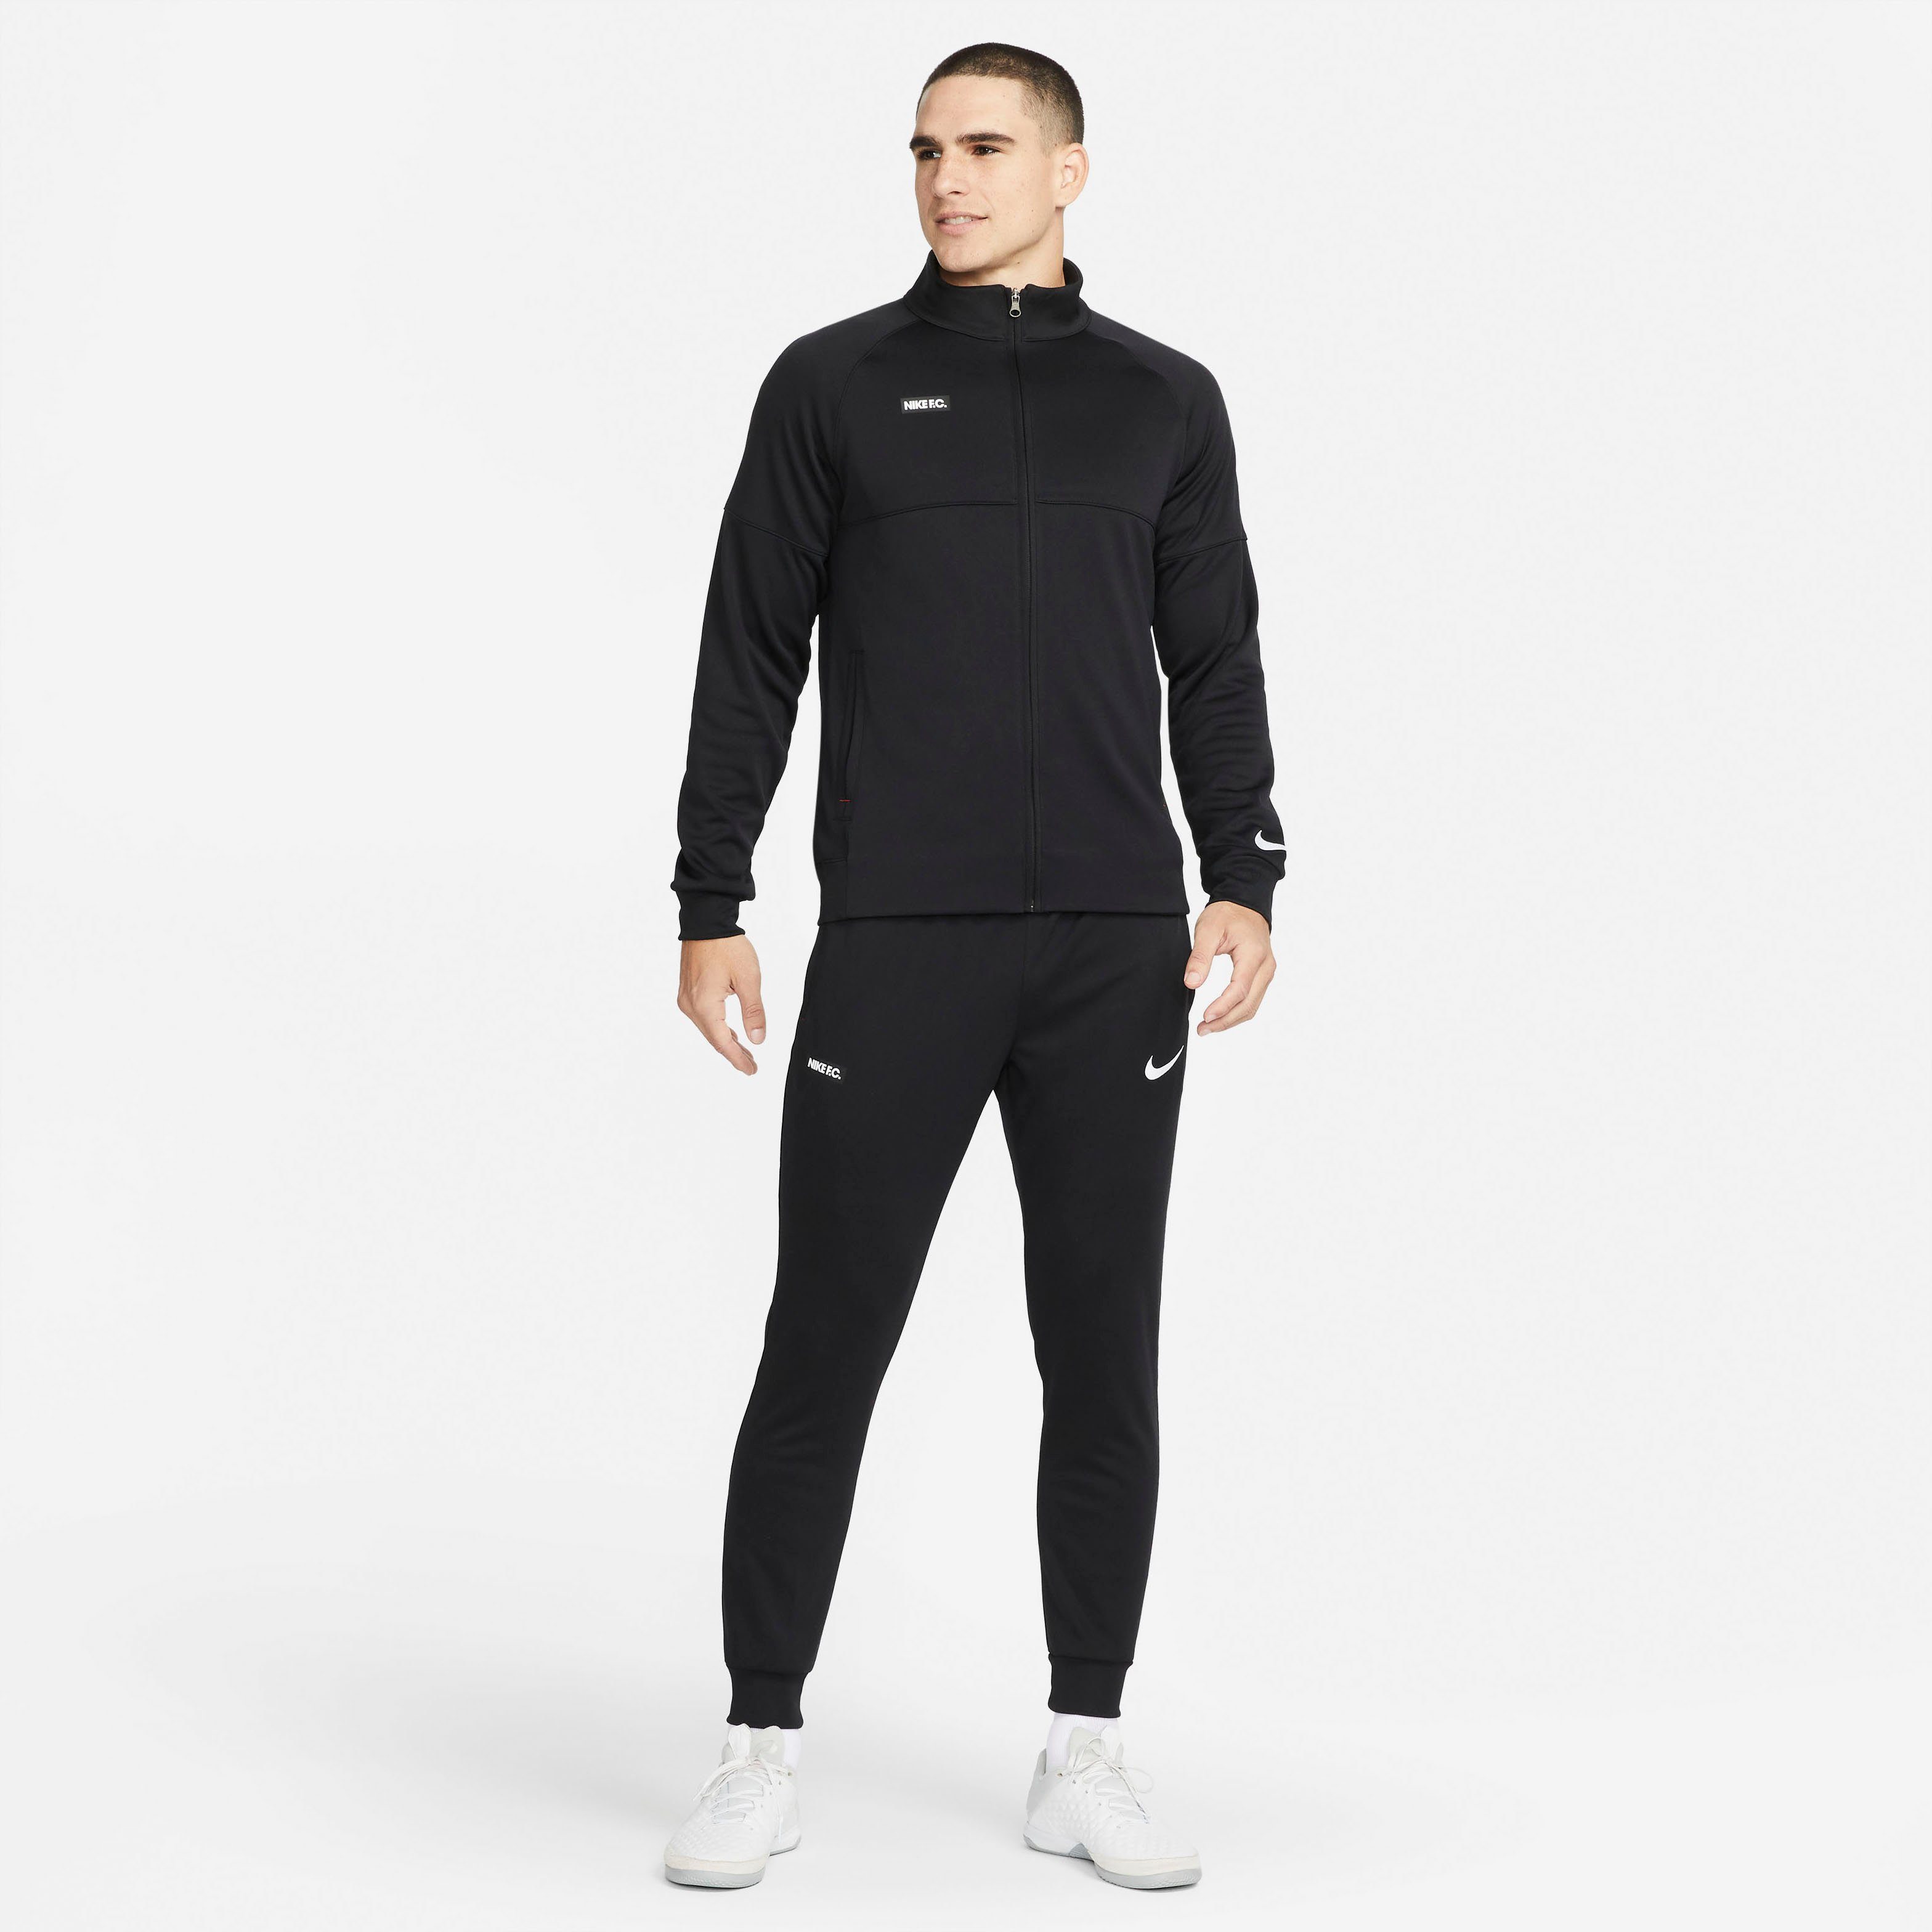 Nike Herrenmode & Herrenbekleidung online kaufen | OTTO